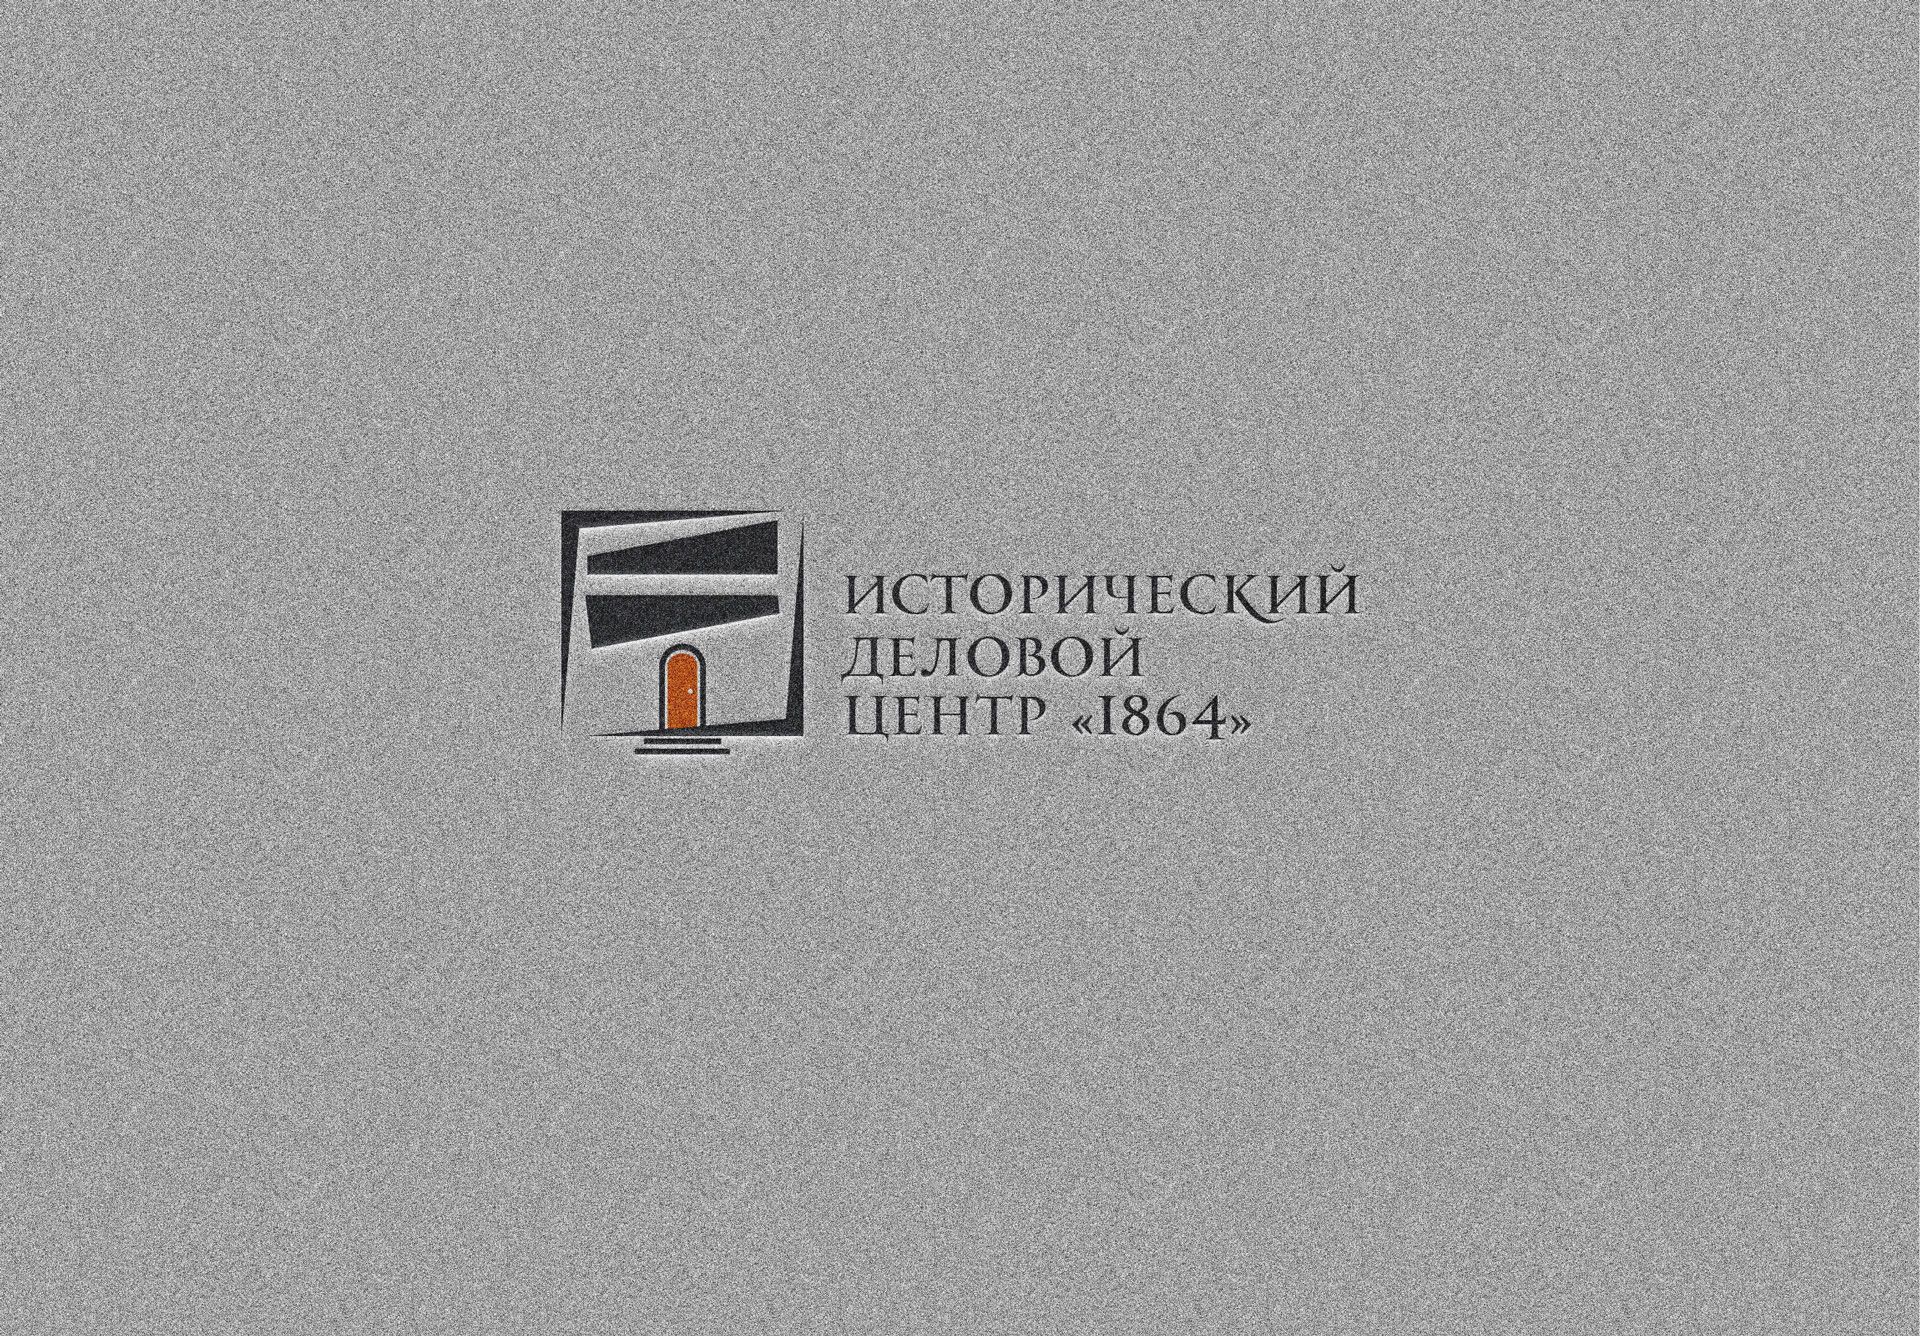 Логотип для  исторического делового центра - дизайнер Advokat72